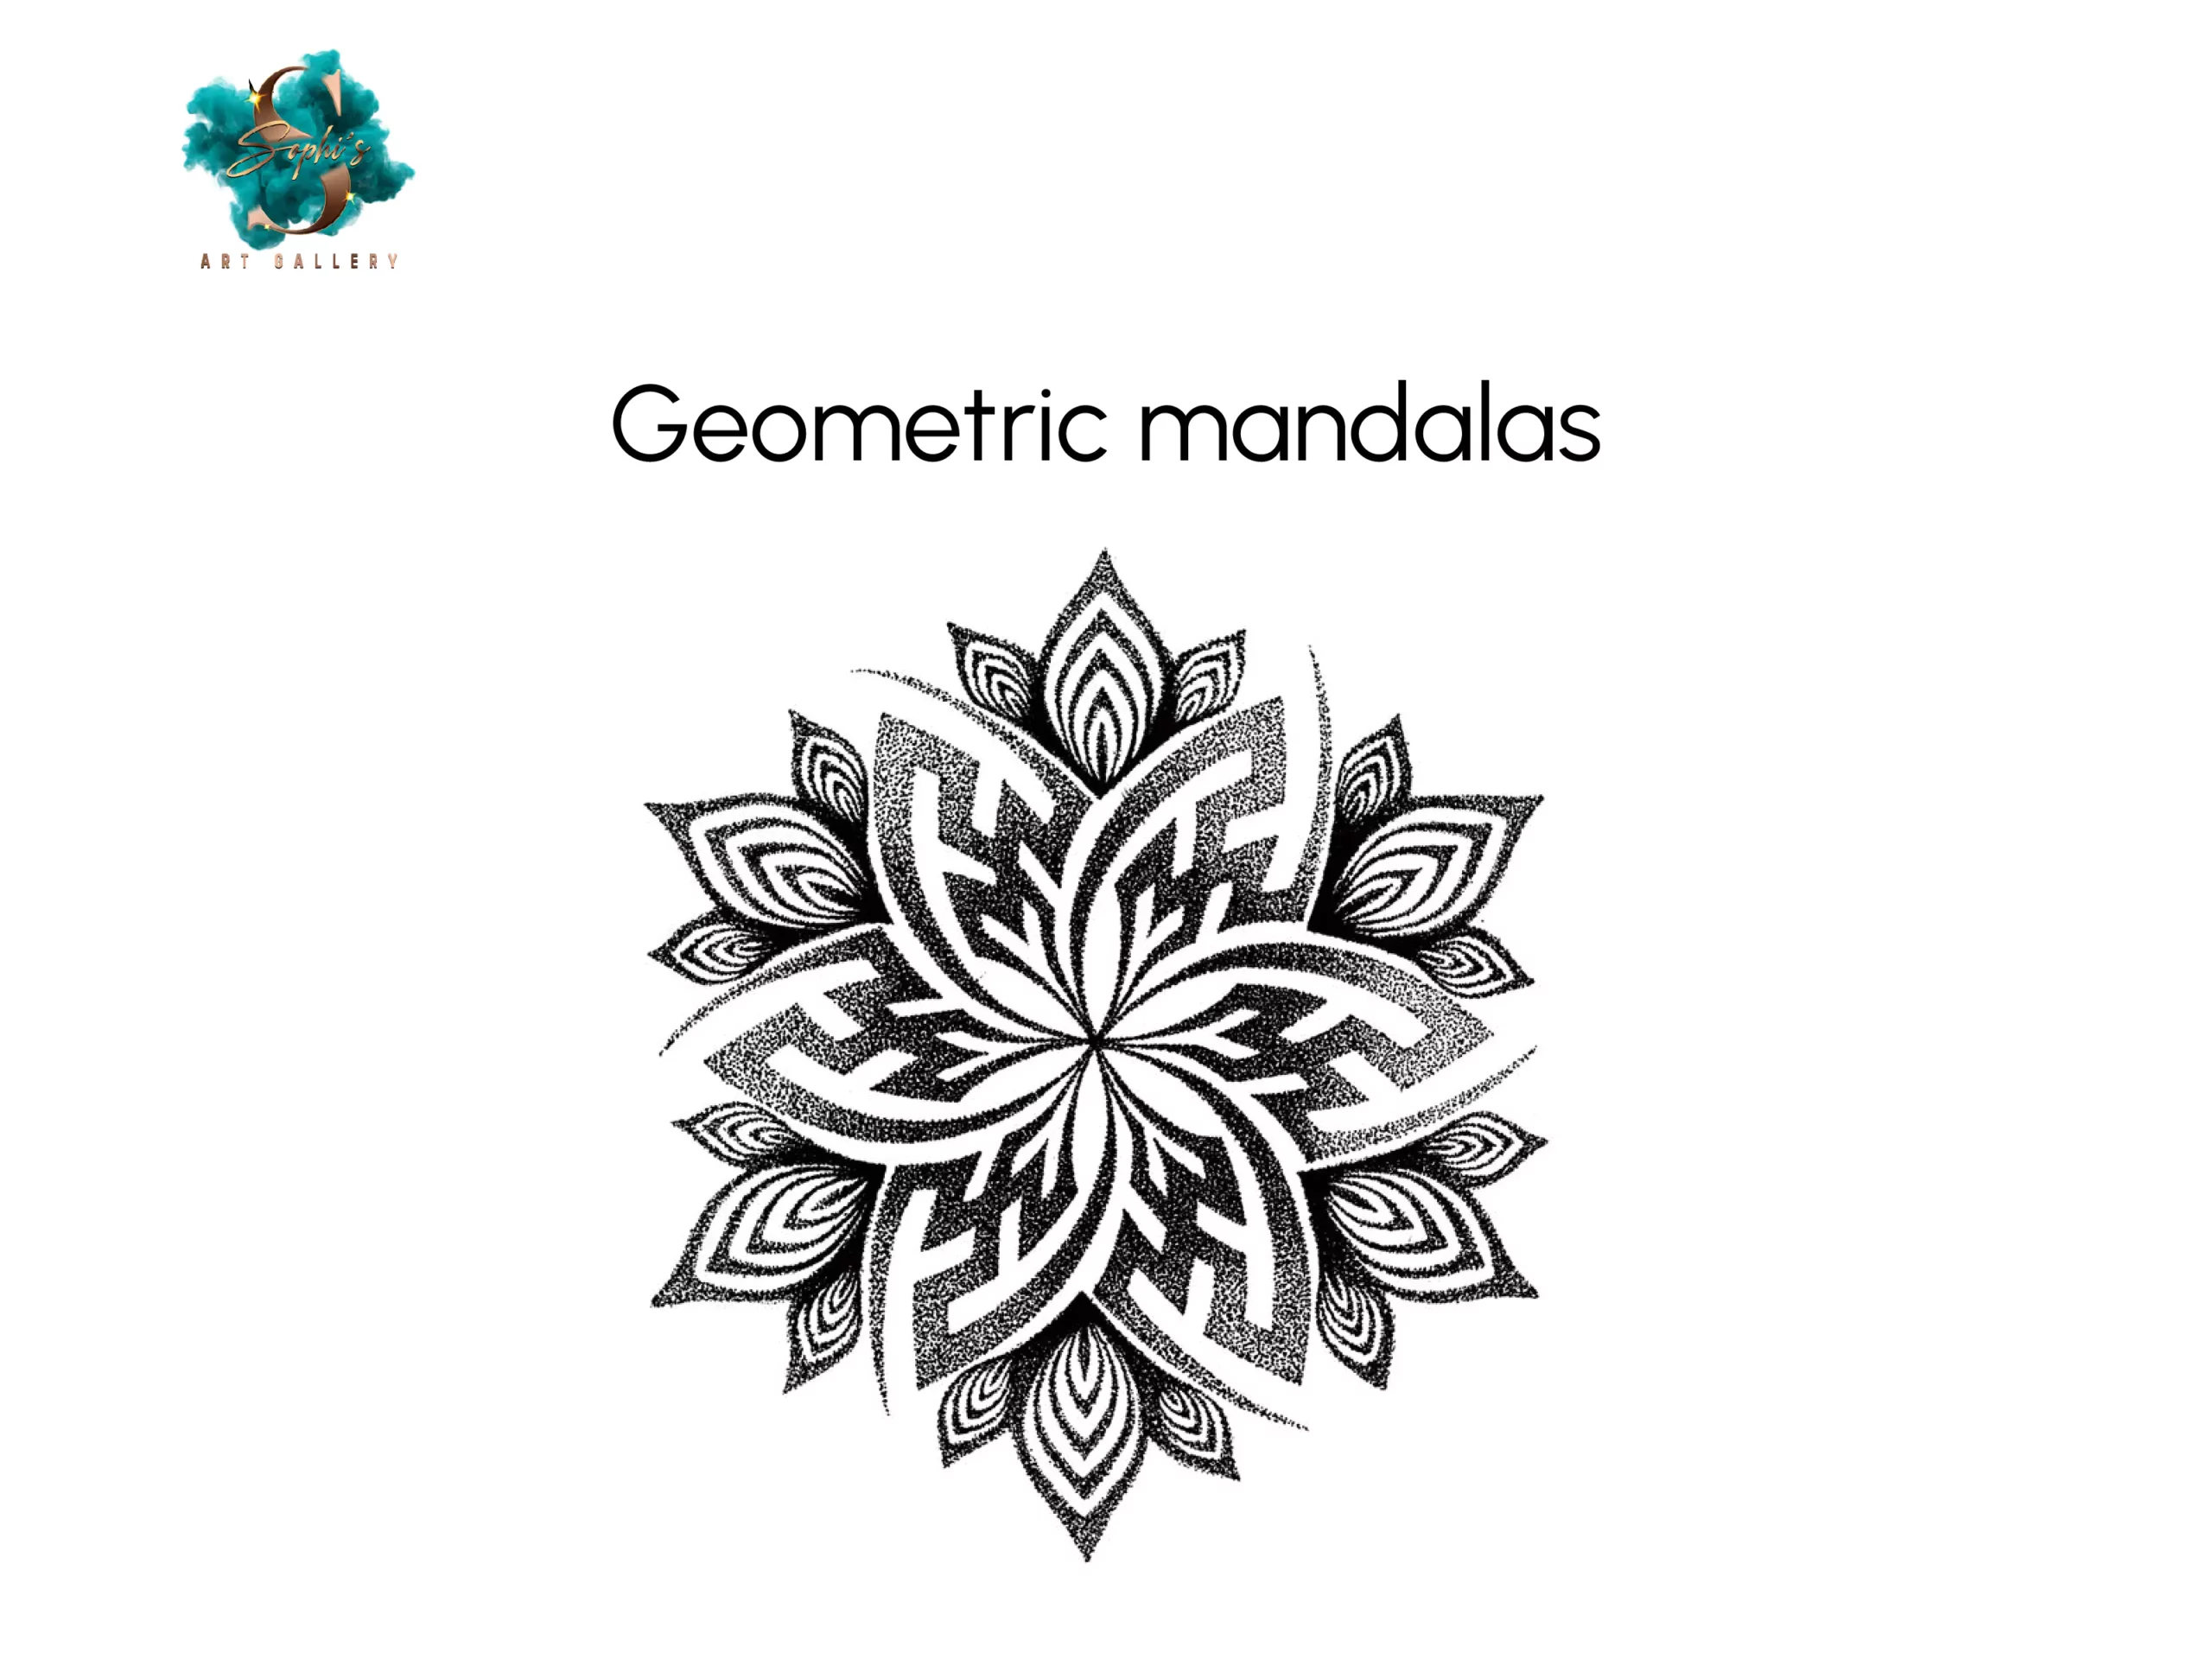 Geometric mandalas